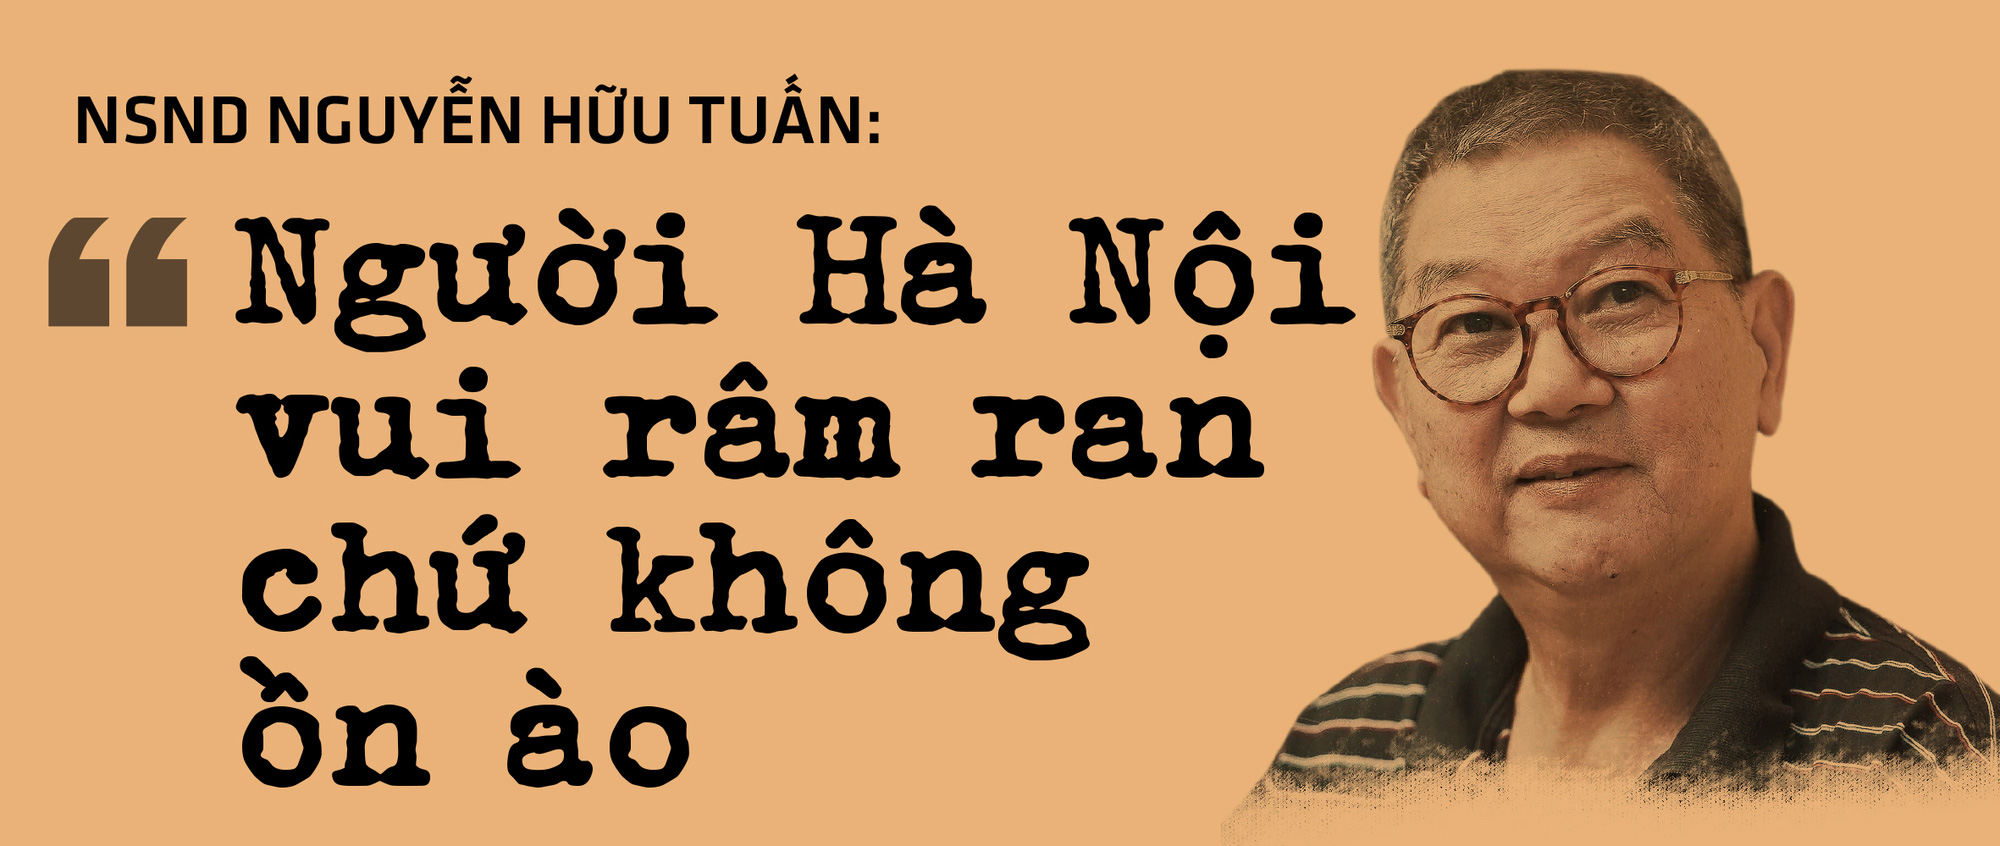 Ngày Sài Gòn cầm tay Hà Nội... - Ảnh 7.